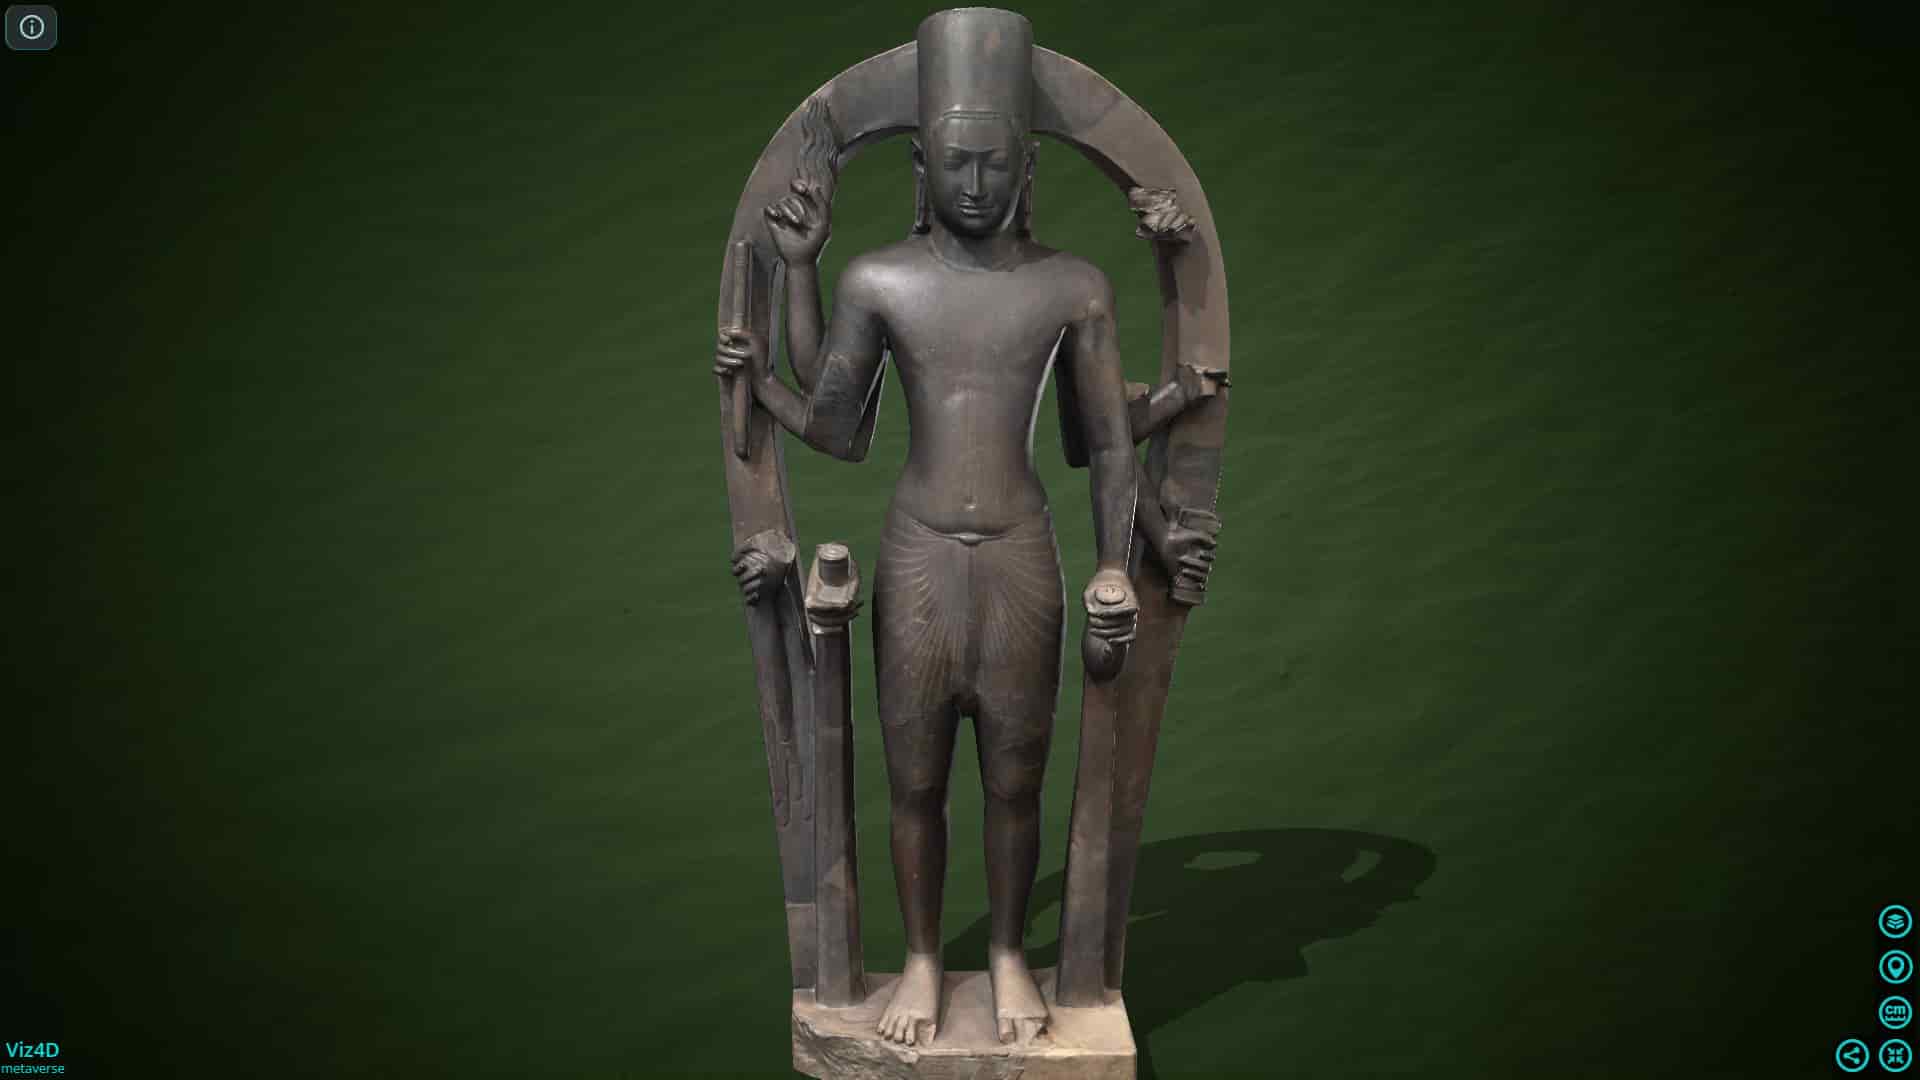 Vishnu 1400 năm tuổi - Bảo tàng Quốc gia Campuchia.